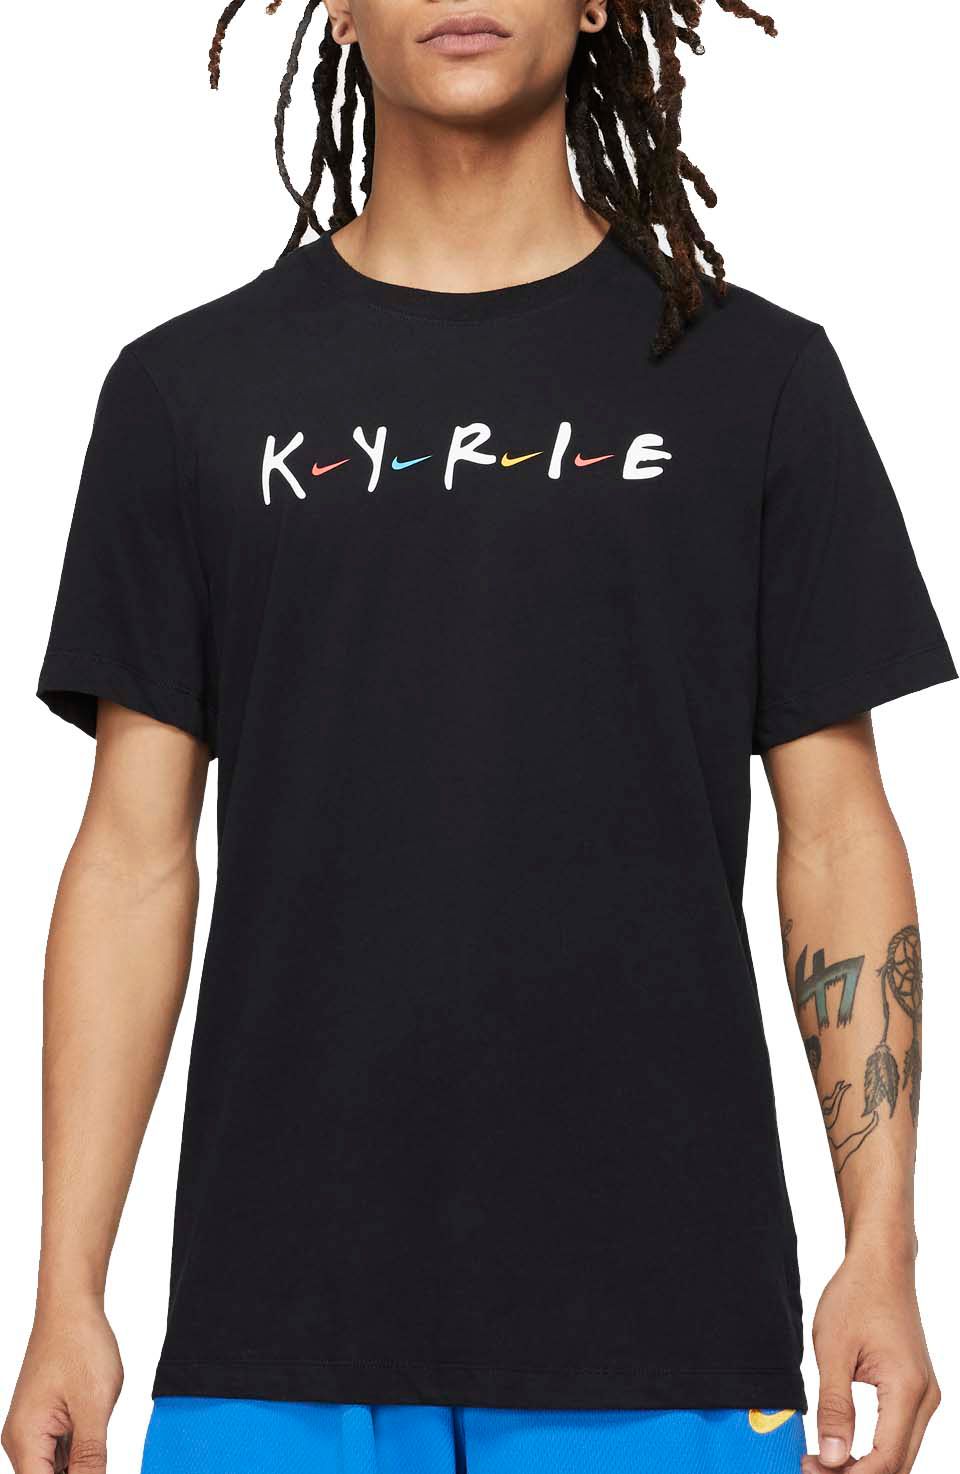 kyrie friends apparel